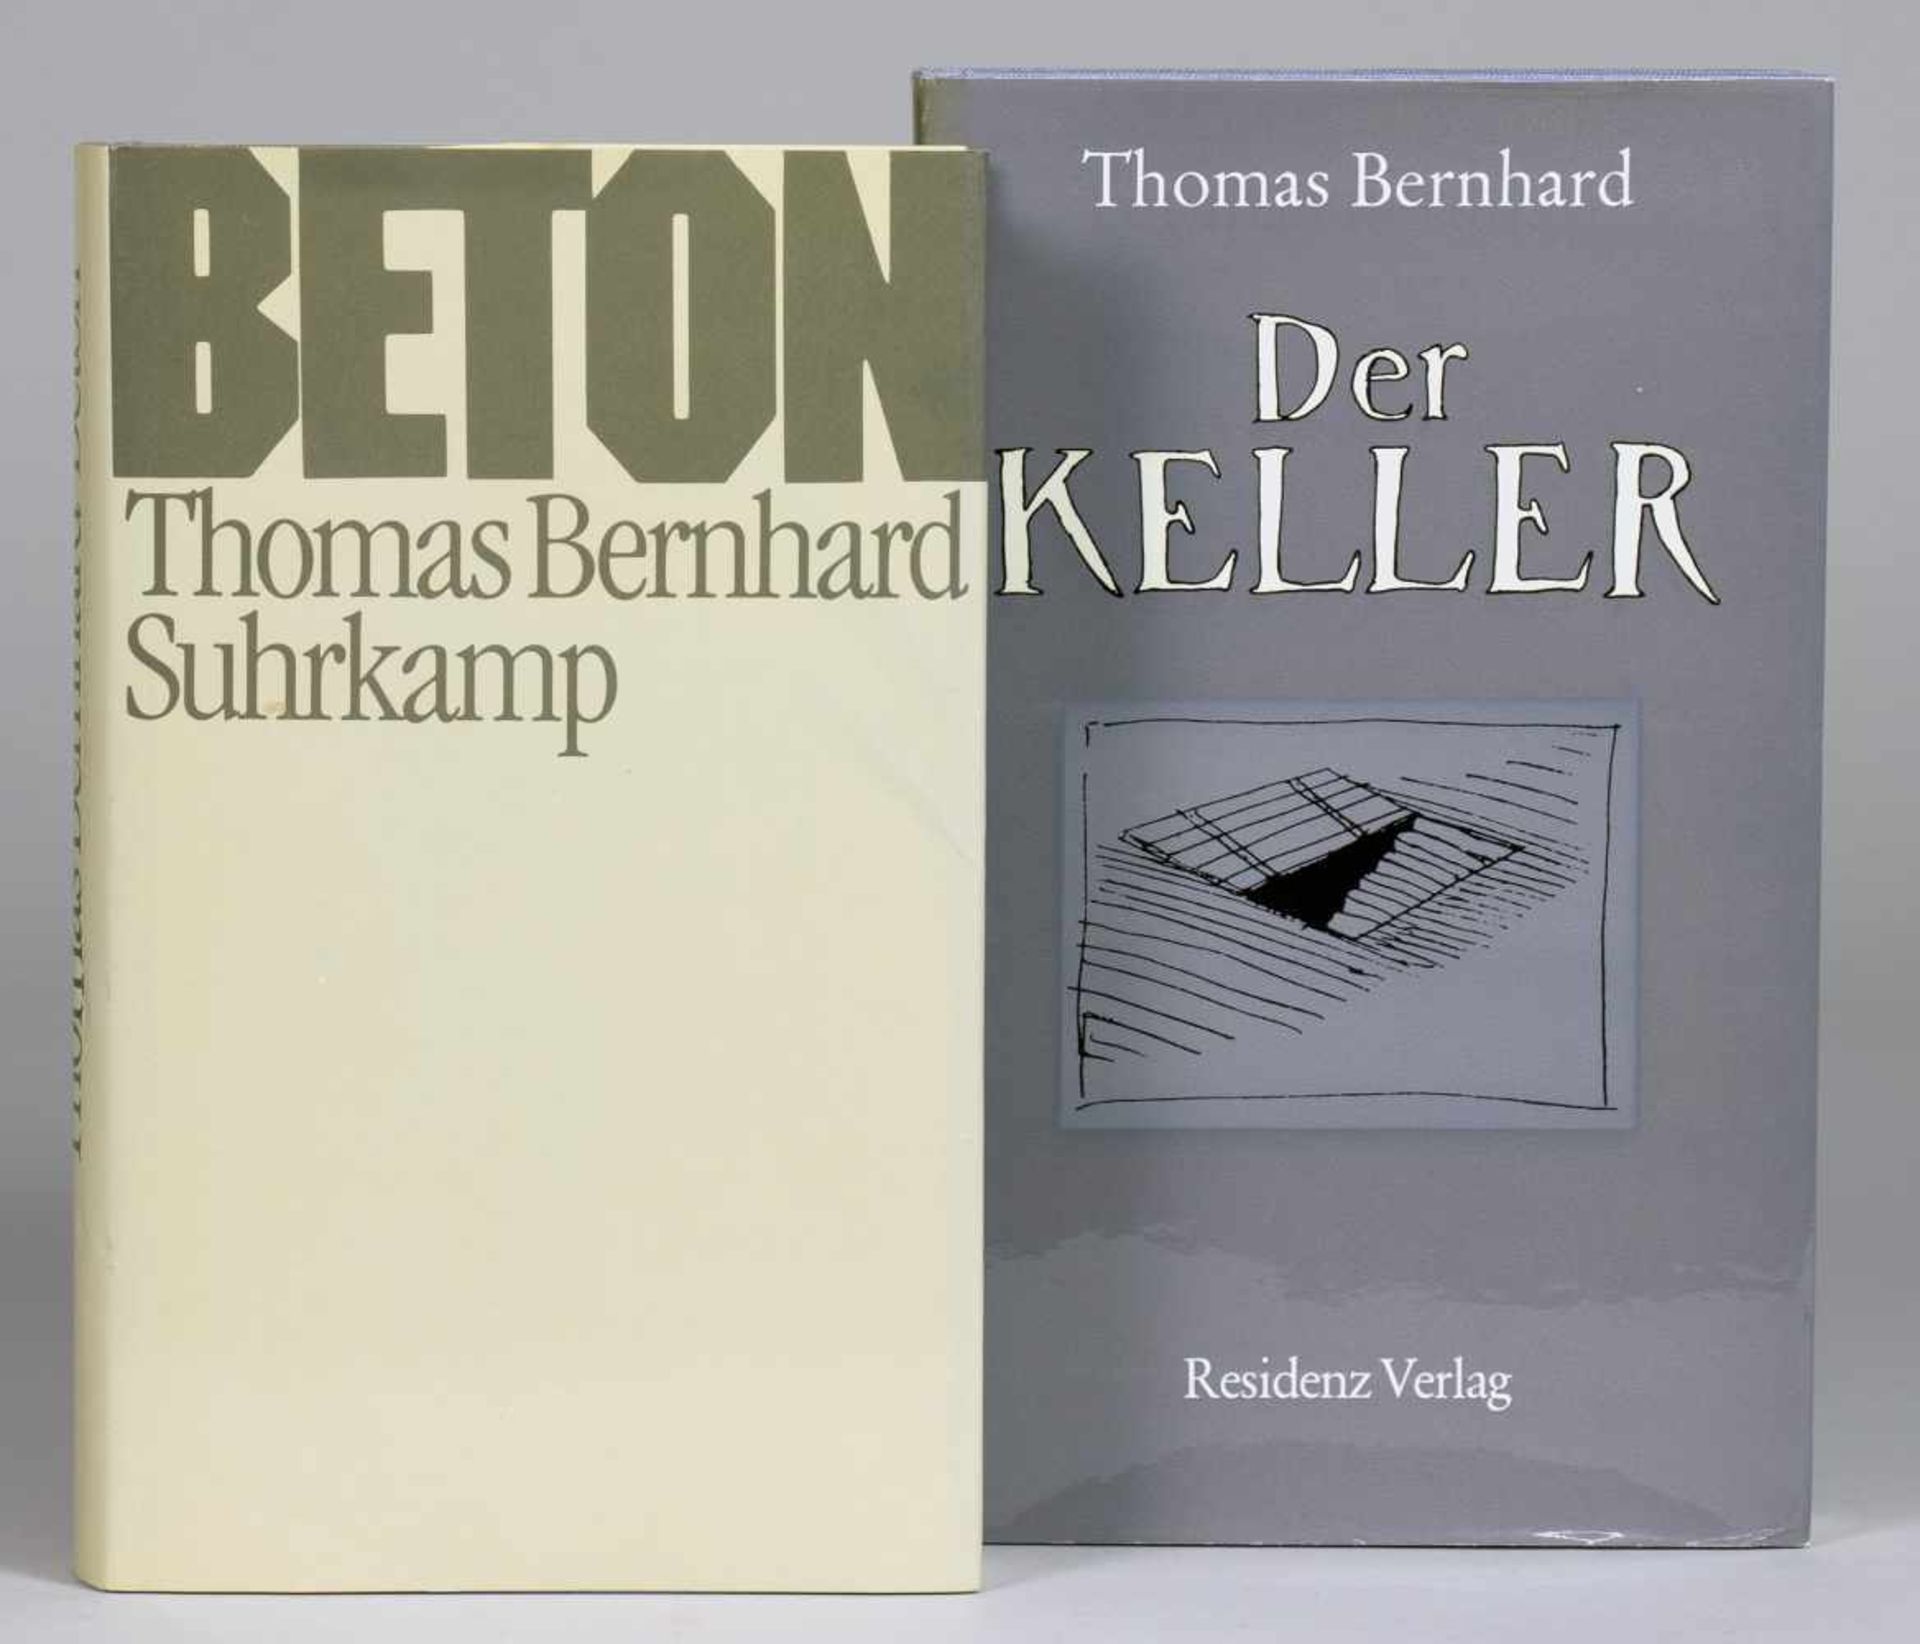 Thomas Bernhard. Der Stimmenimitator. Frankfurt am Main, Suhrkamp 1978. Originalleinenband mit - - Bild 2 aus 2